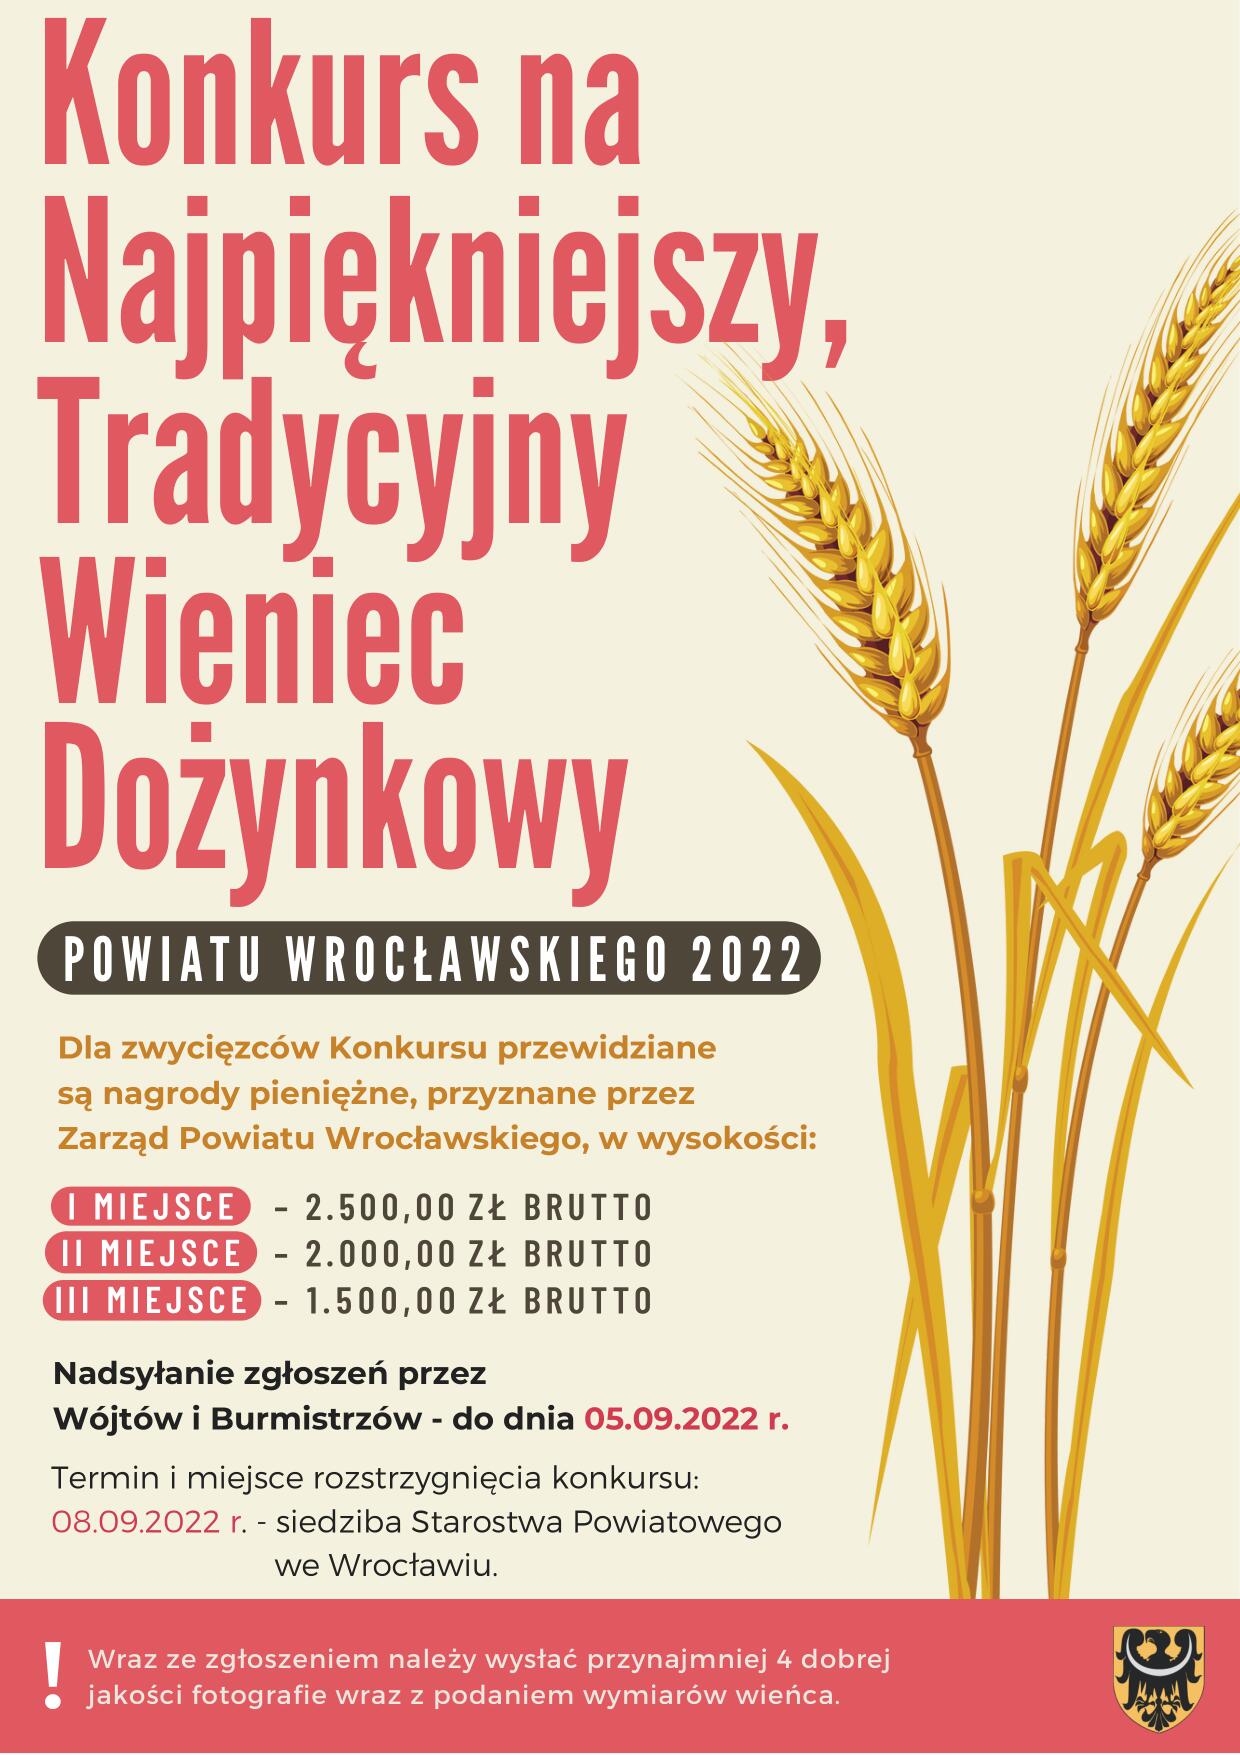 Plakat Konkurs na Najpiękniejszy, Tradycyjny Wieniec Dożynkowy Powiatu Wrocławskiego 2022